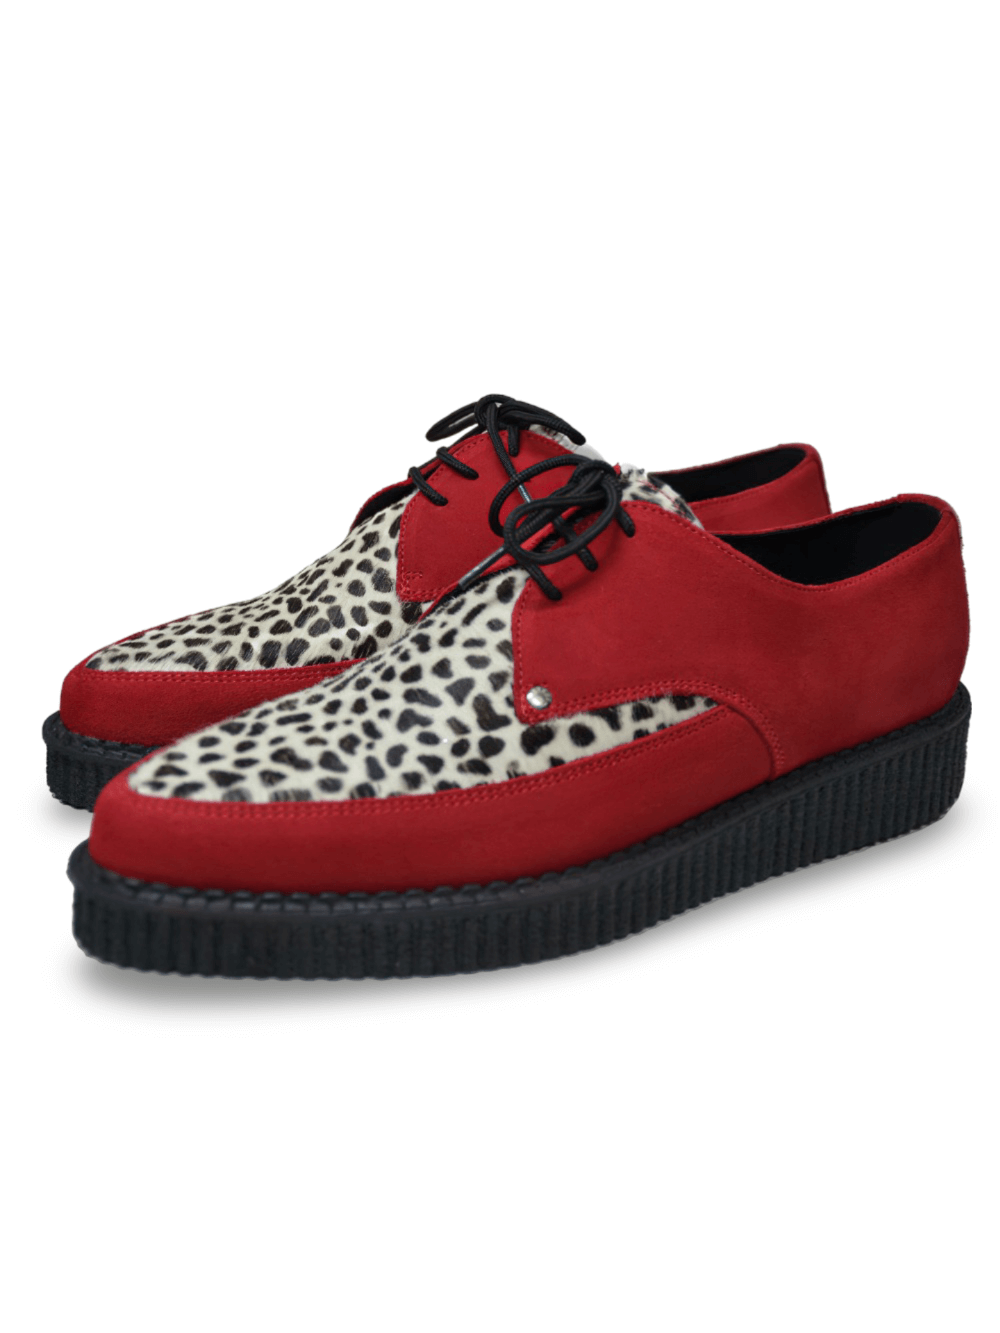 Zapatos con cordones creeper puntiagudos rojos y leopardo